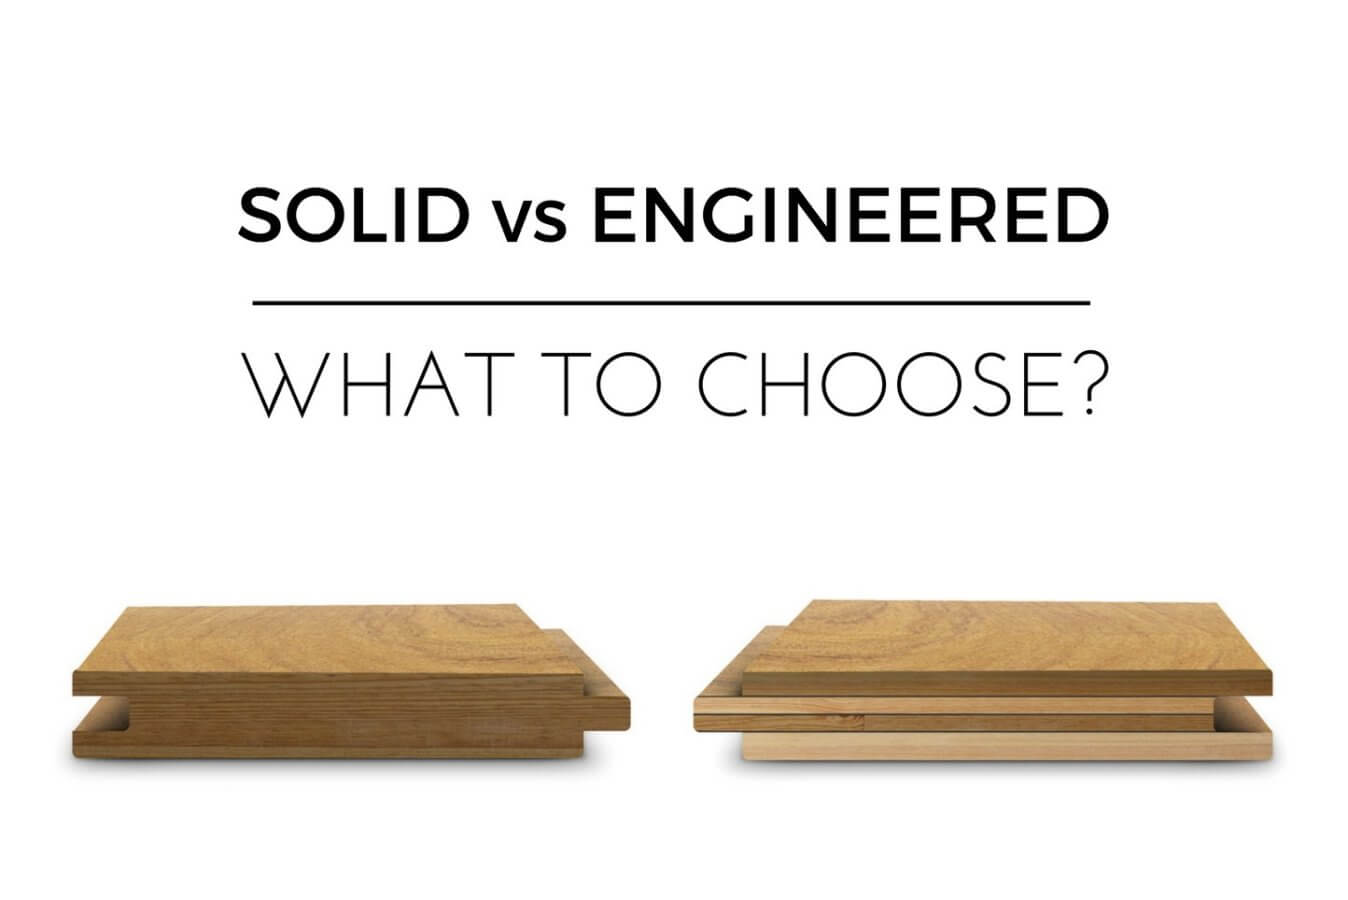 Solid Hardwood vs Engineered Hardwood